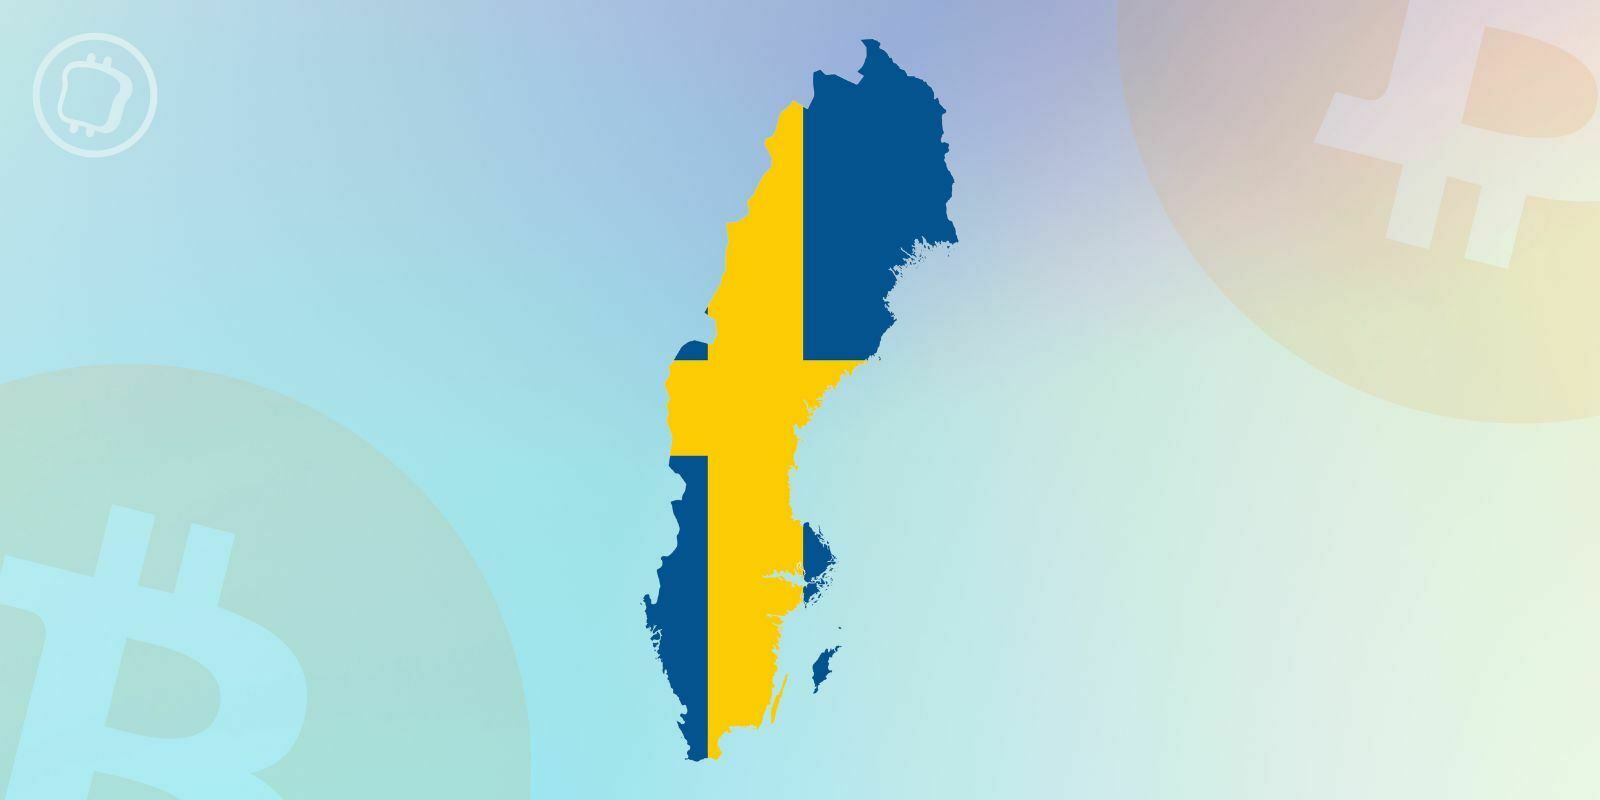 Minage de Bitcoin en Suède : sa consommation électrique pose problème